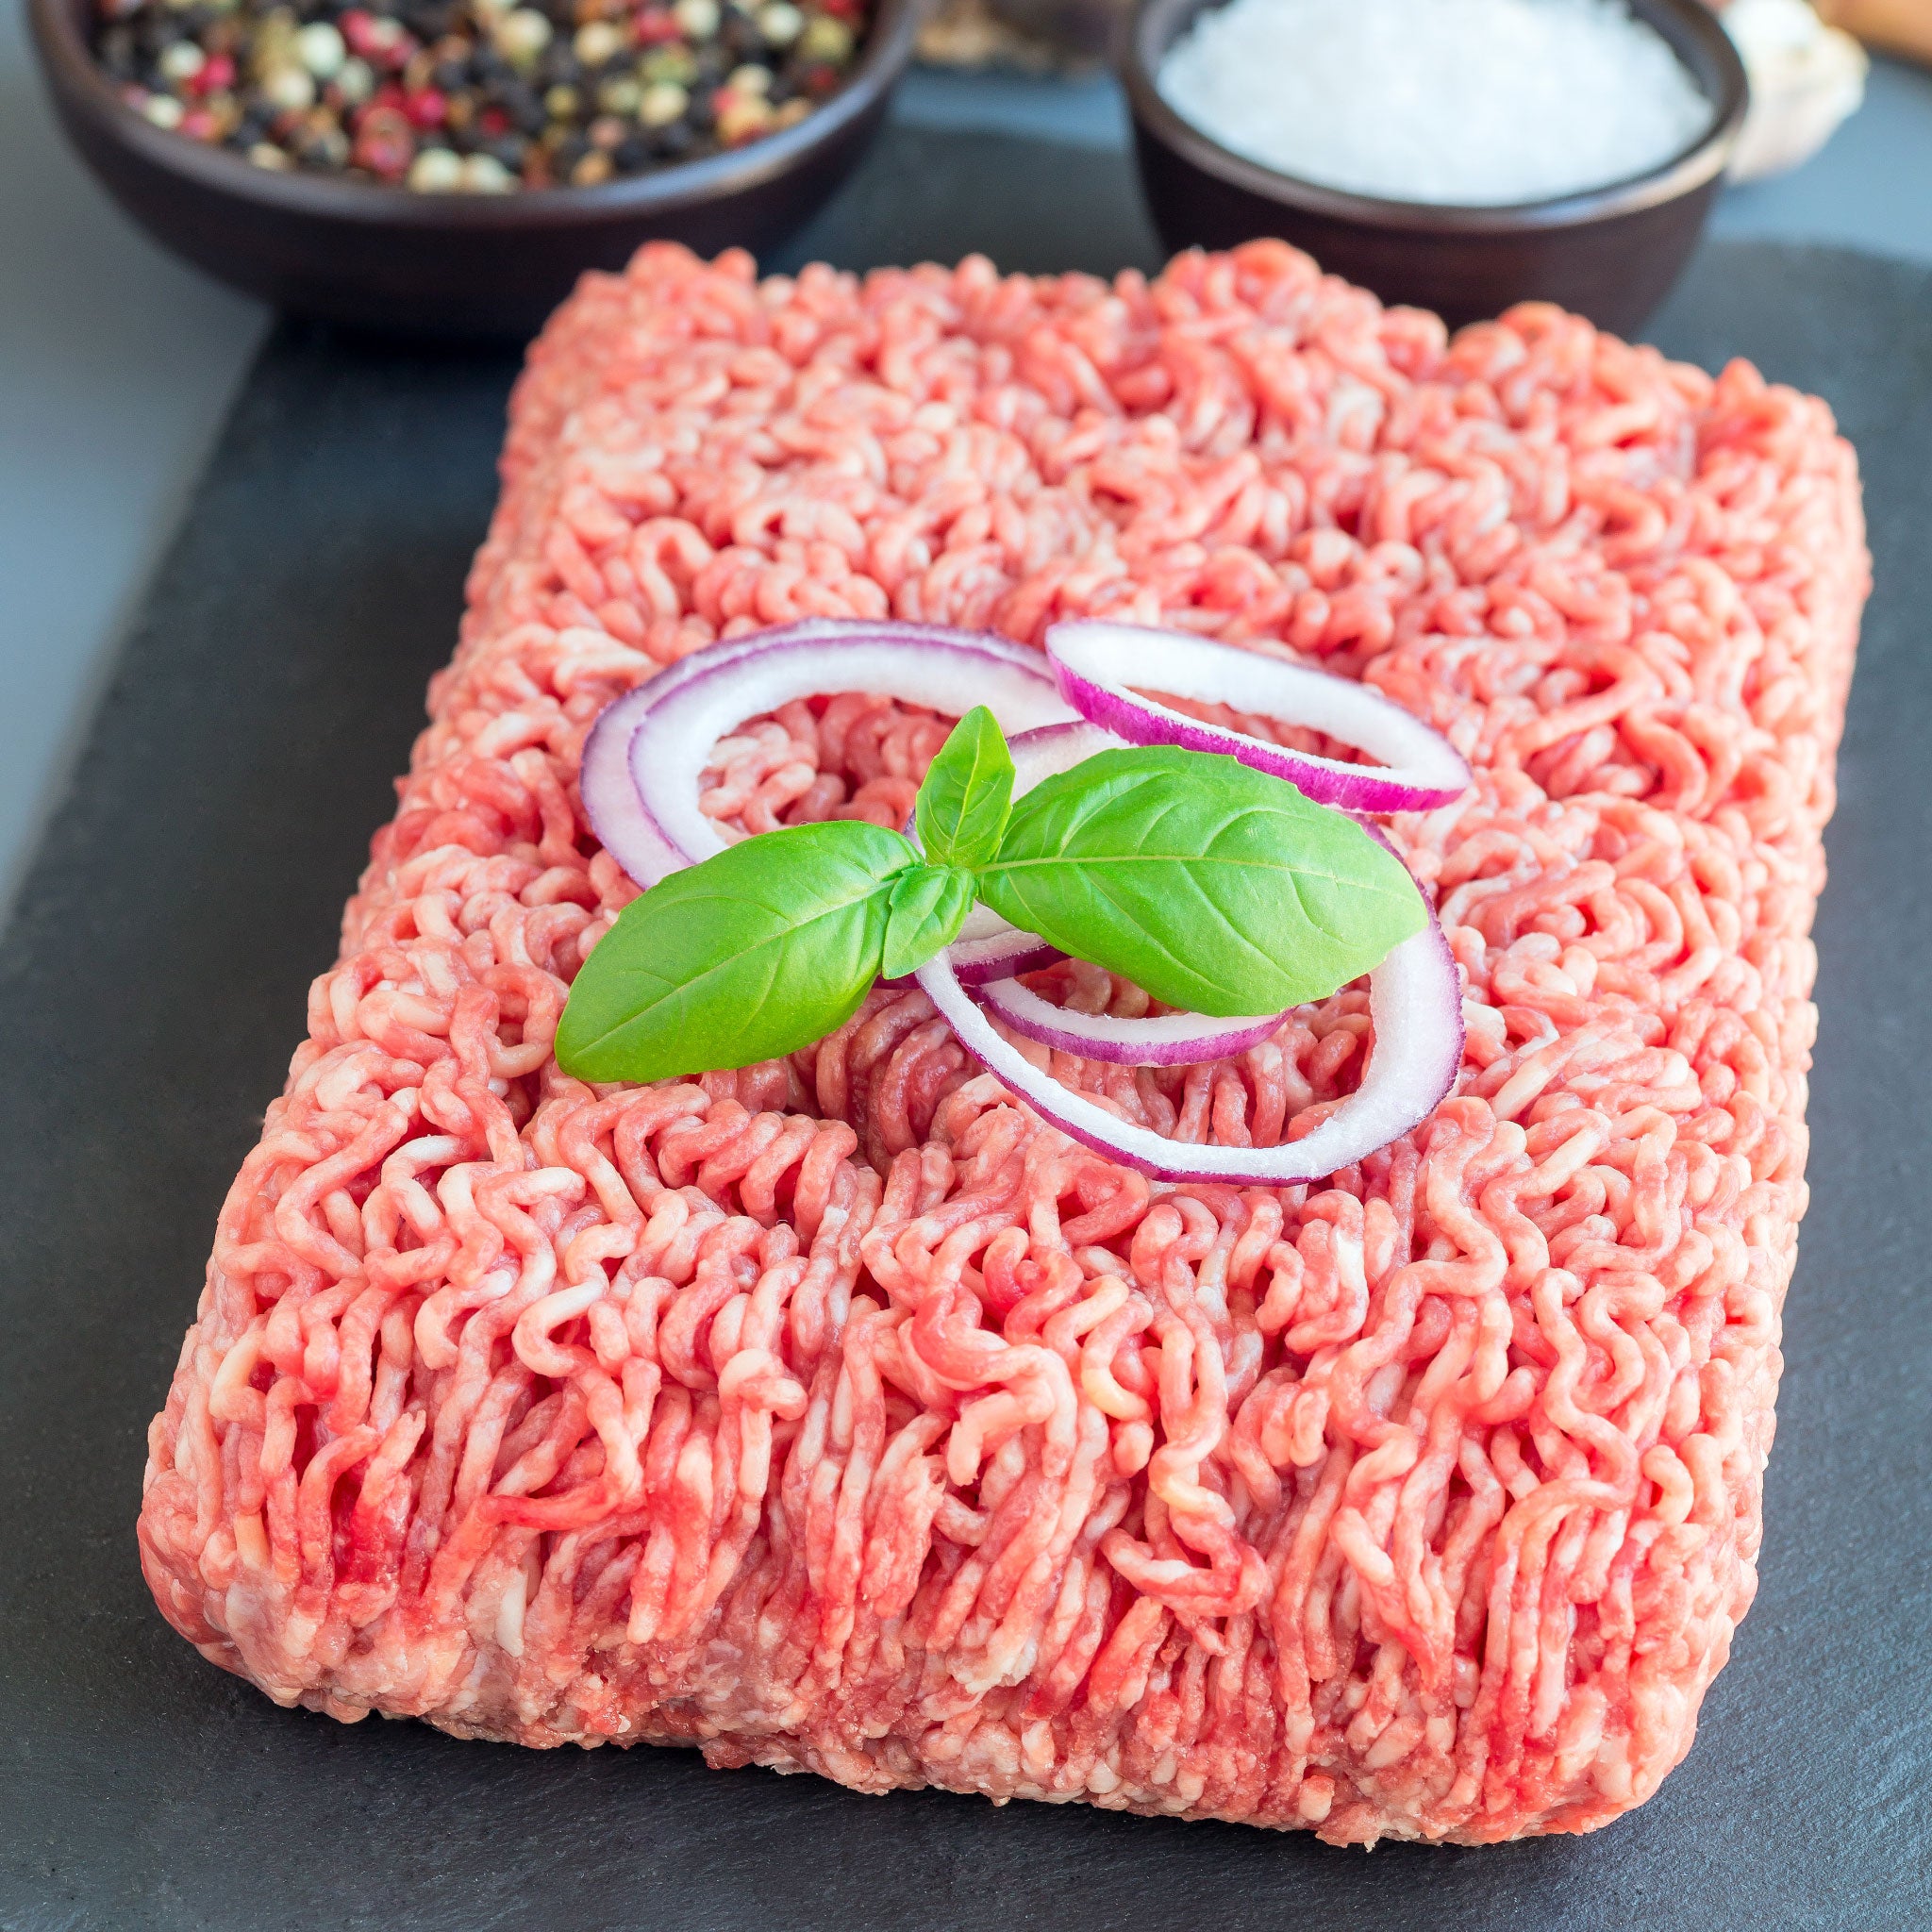 Beef Ground Chuck – Tillman's Meats